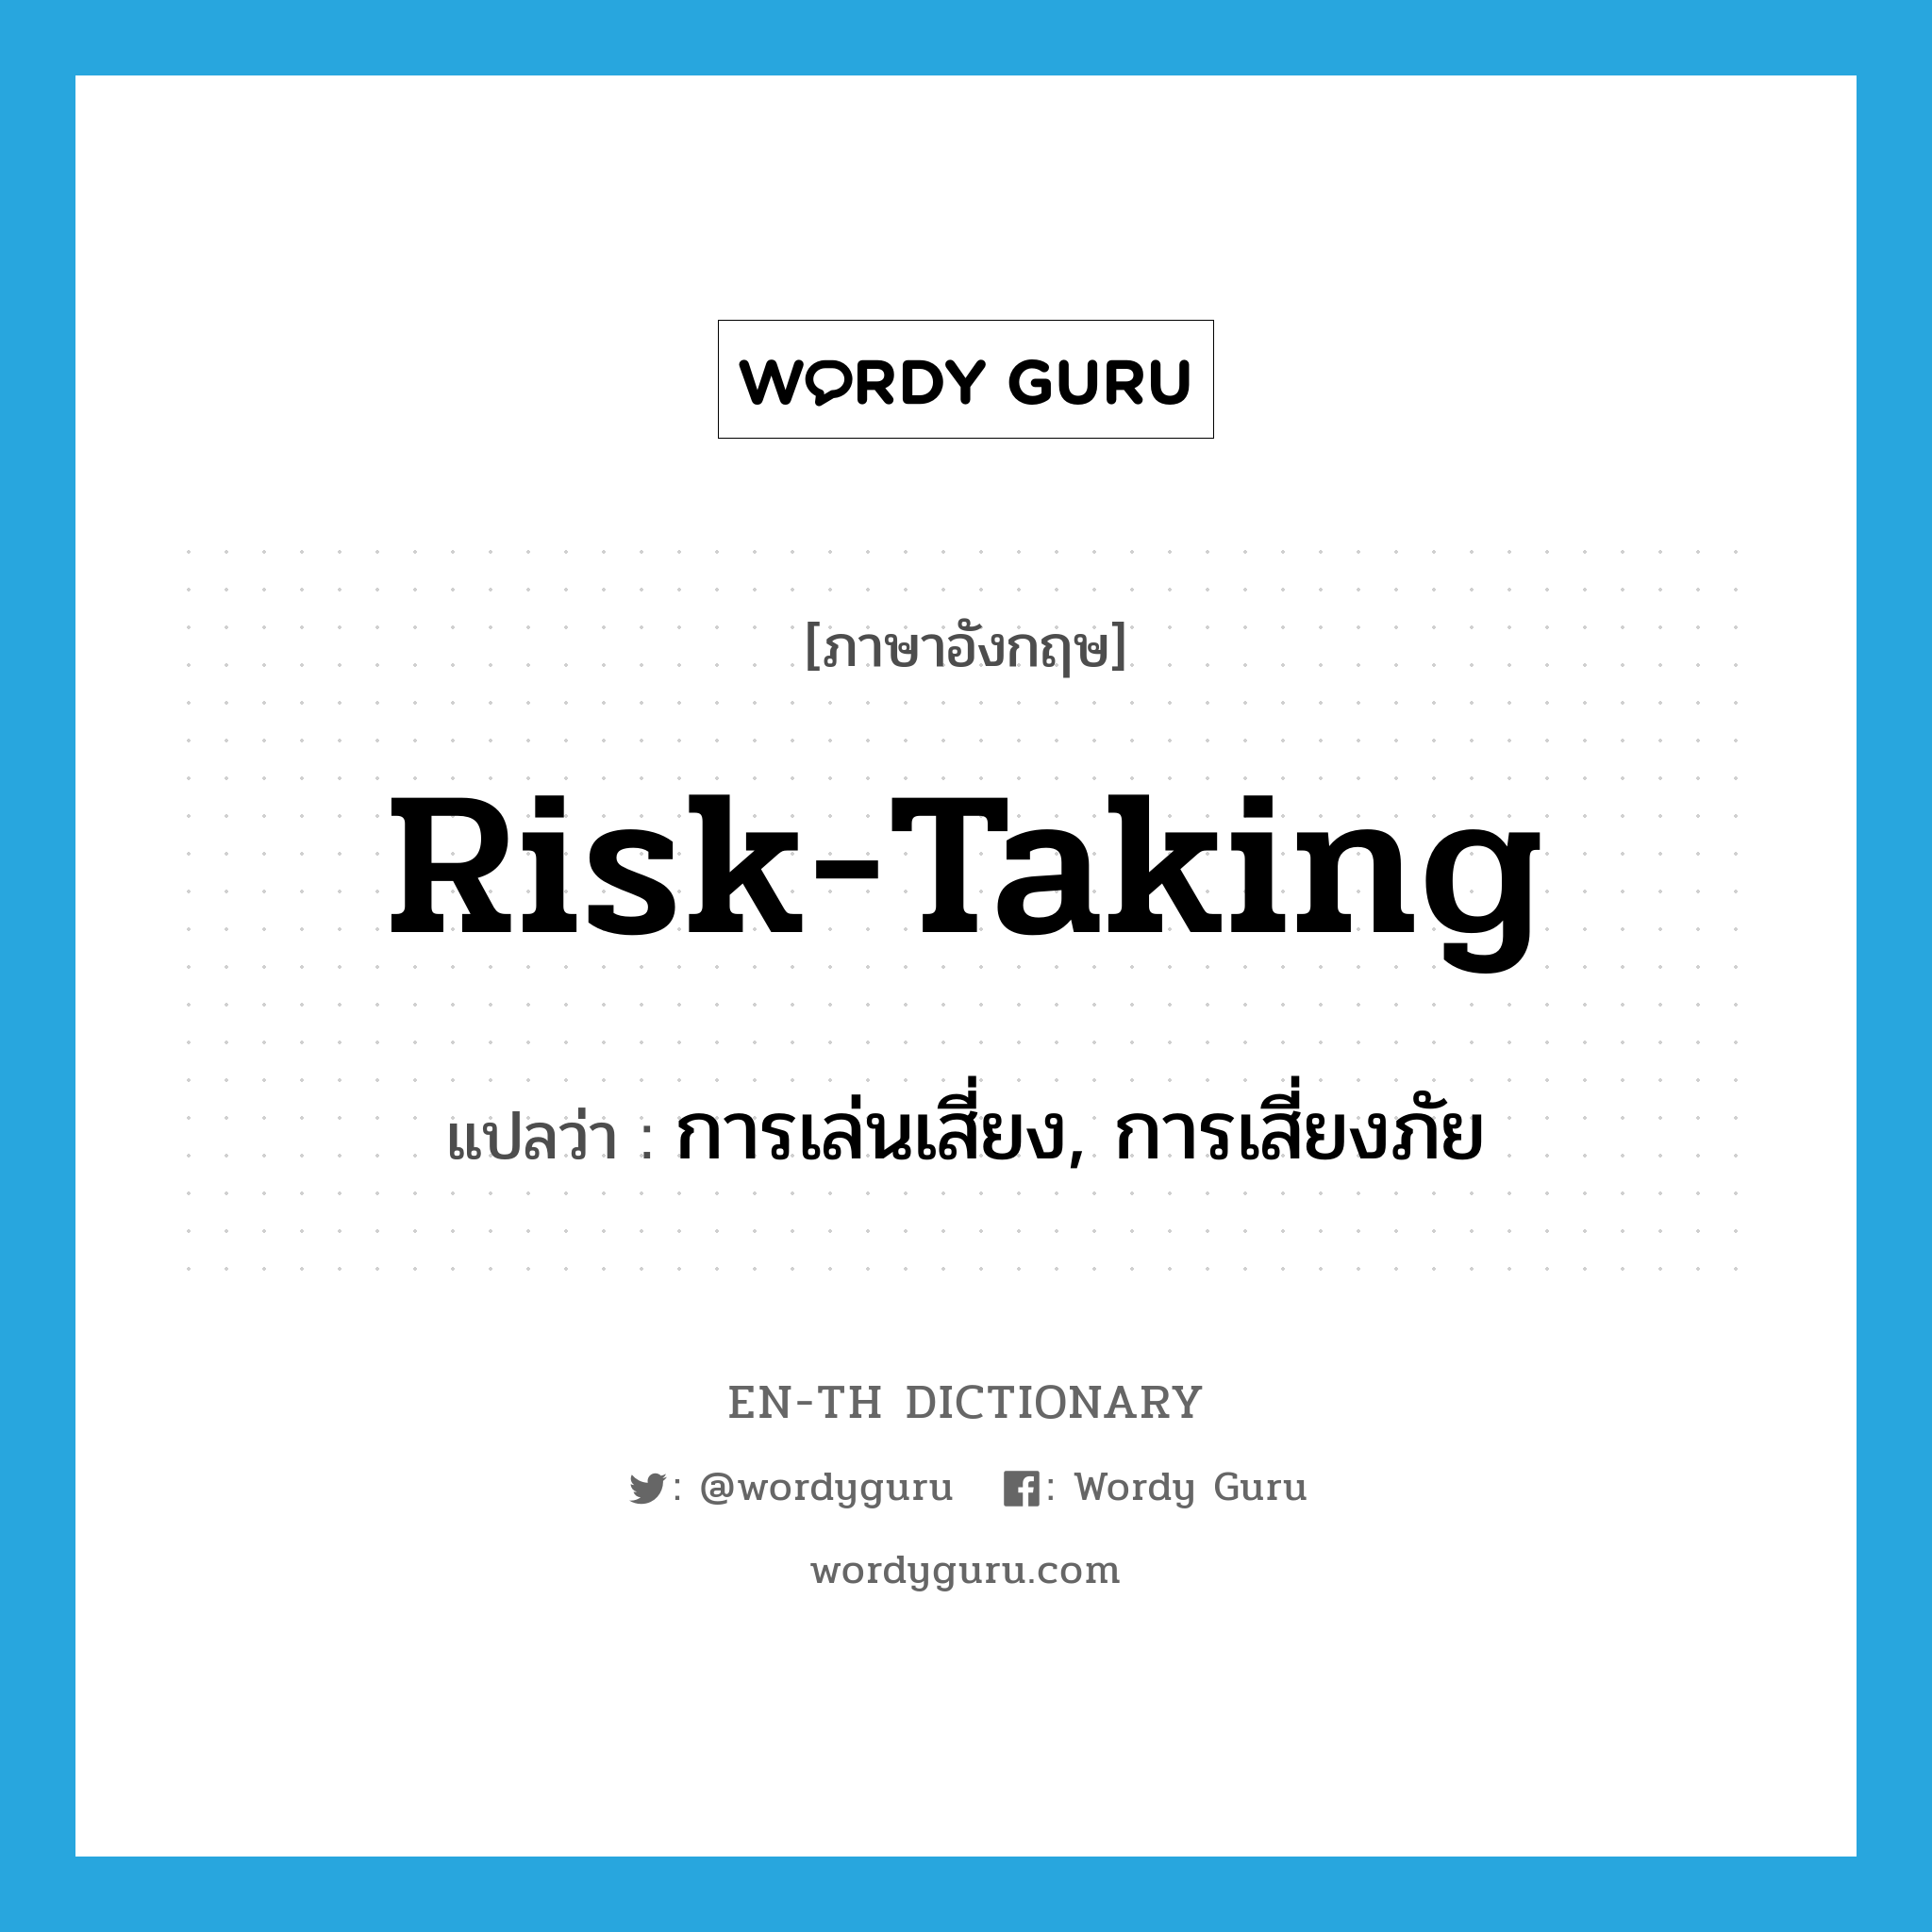 risk-taking แปลว่า?, คำศัพท์ภาษาอังกฤษ risk-taking แปลว่า การเล่นเสี่ยง, การเสี่ยงภัย ประเภท N หมวด N